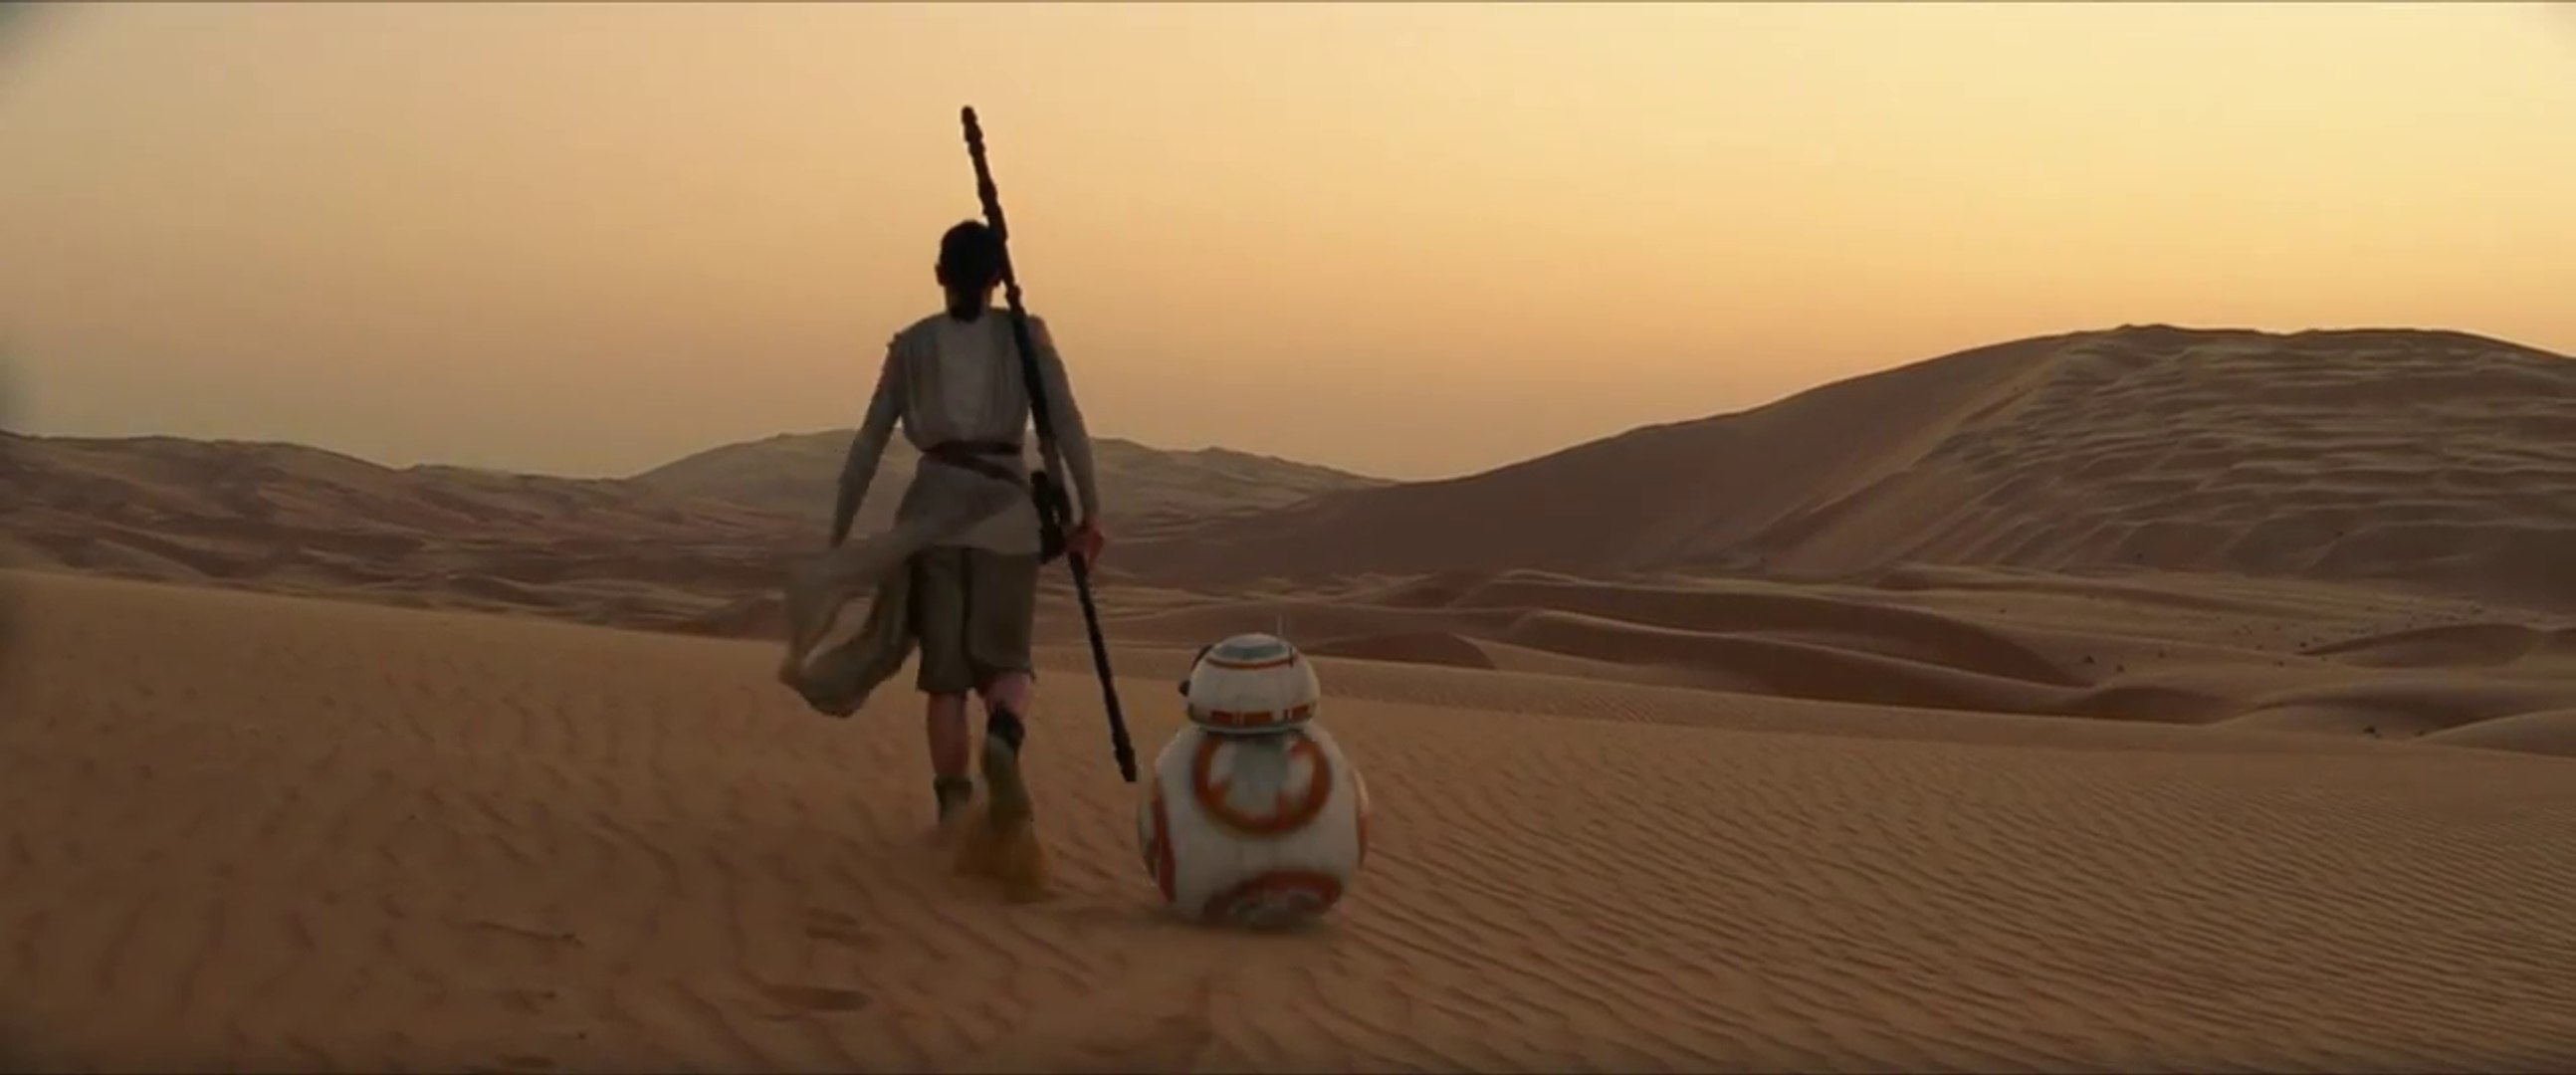 Star Wars : Le Réveil de la Force - Trailer VF - Vidéo Dailymotion